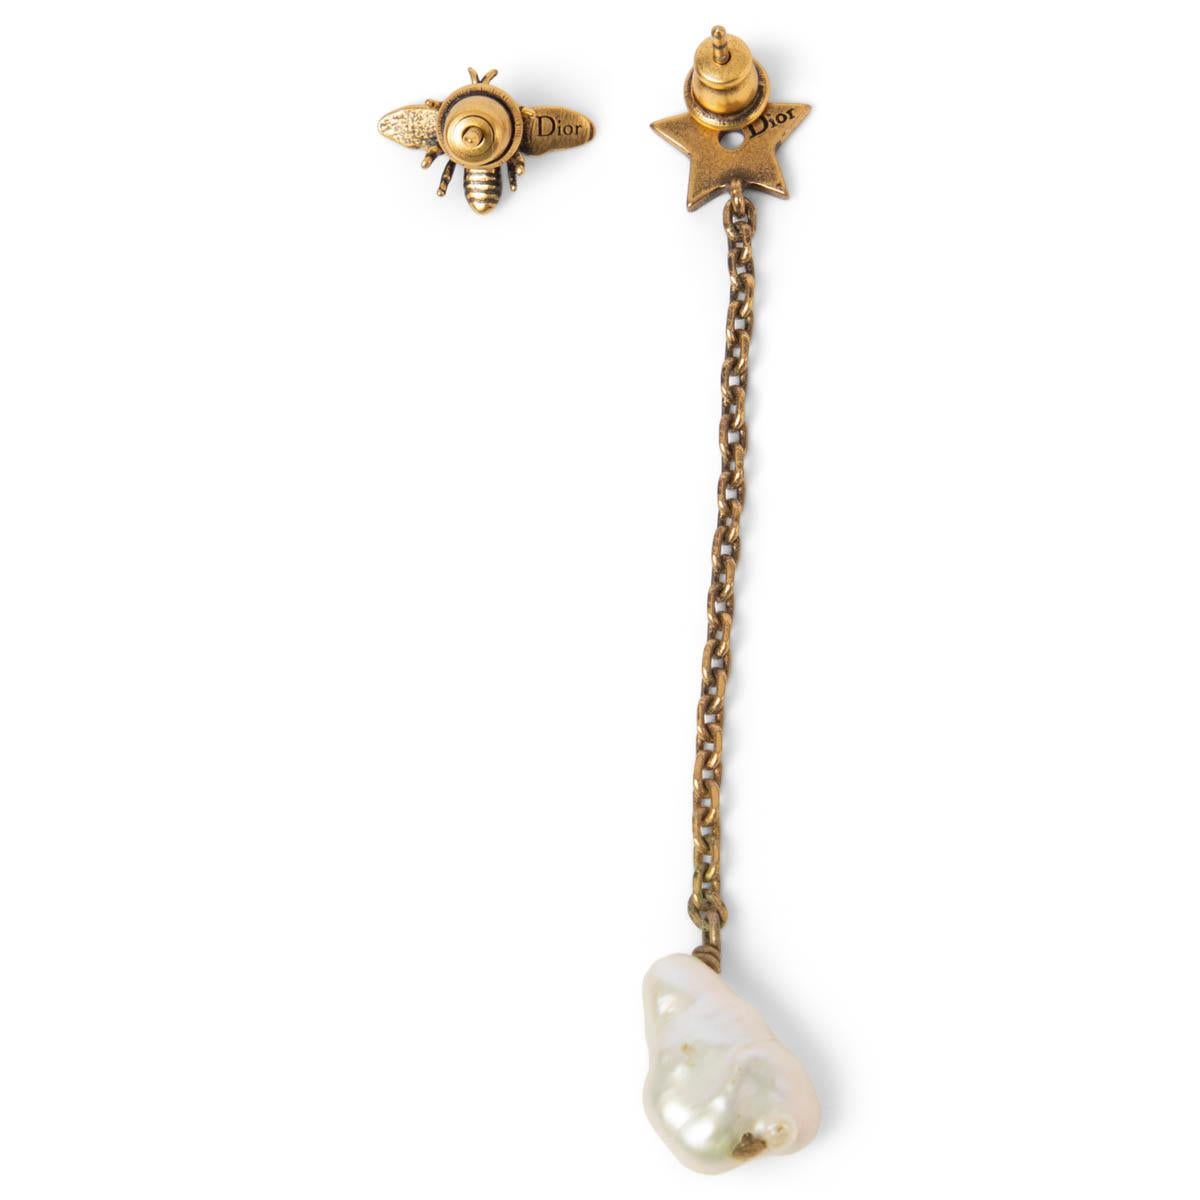 100% authentische Ohrringe von Christian Dior aus gealtertem goldfarbenem Metall. Der eine ist ein Bienenstecker, der andere ein Stern-Ohrring mit CD-Perlenimitat. Sie wurden getragen und sind in ausgezeichnetem Zustand.

Messungen
Breite	0.9cm